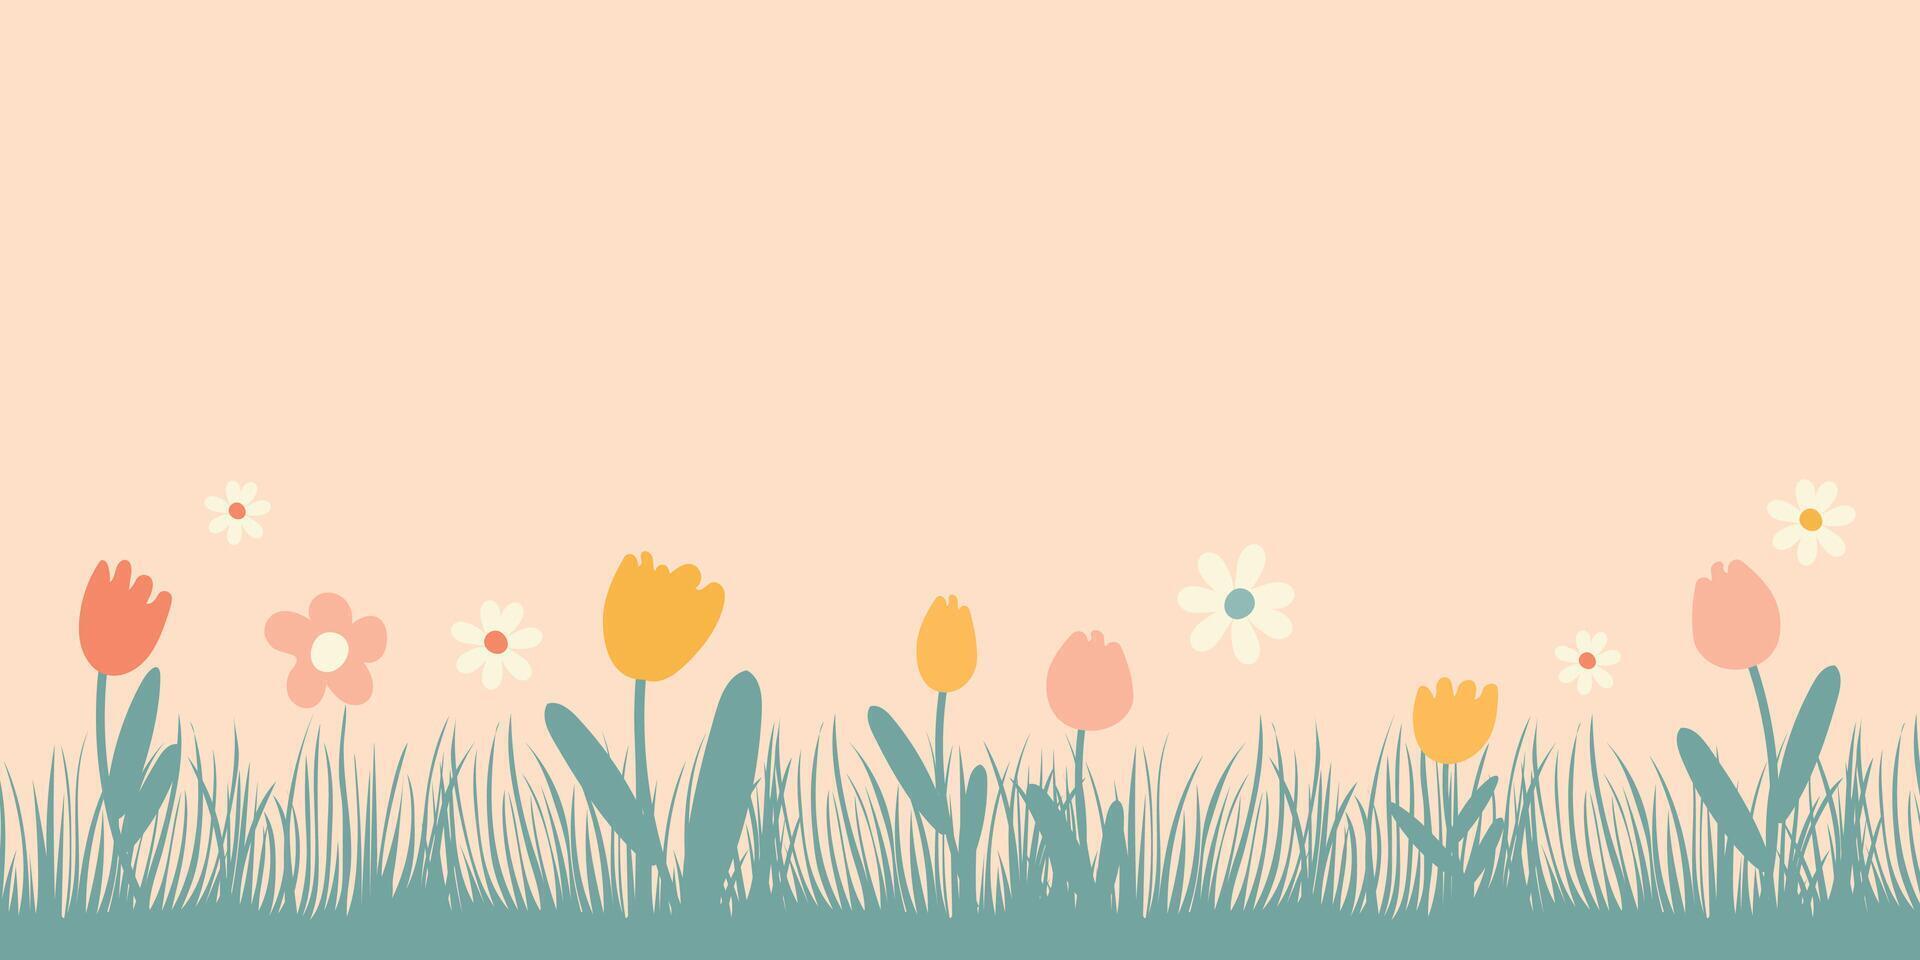 voorjaar achtergrond met plaats voor tekst. vector illustratie met gras en bloemen.